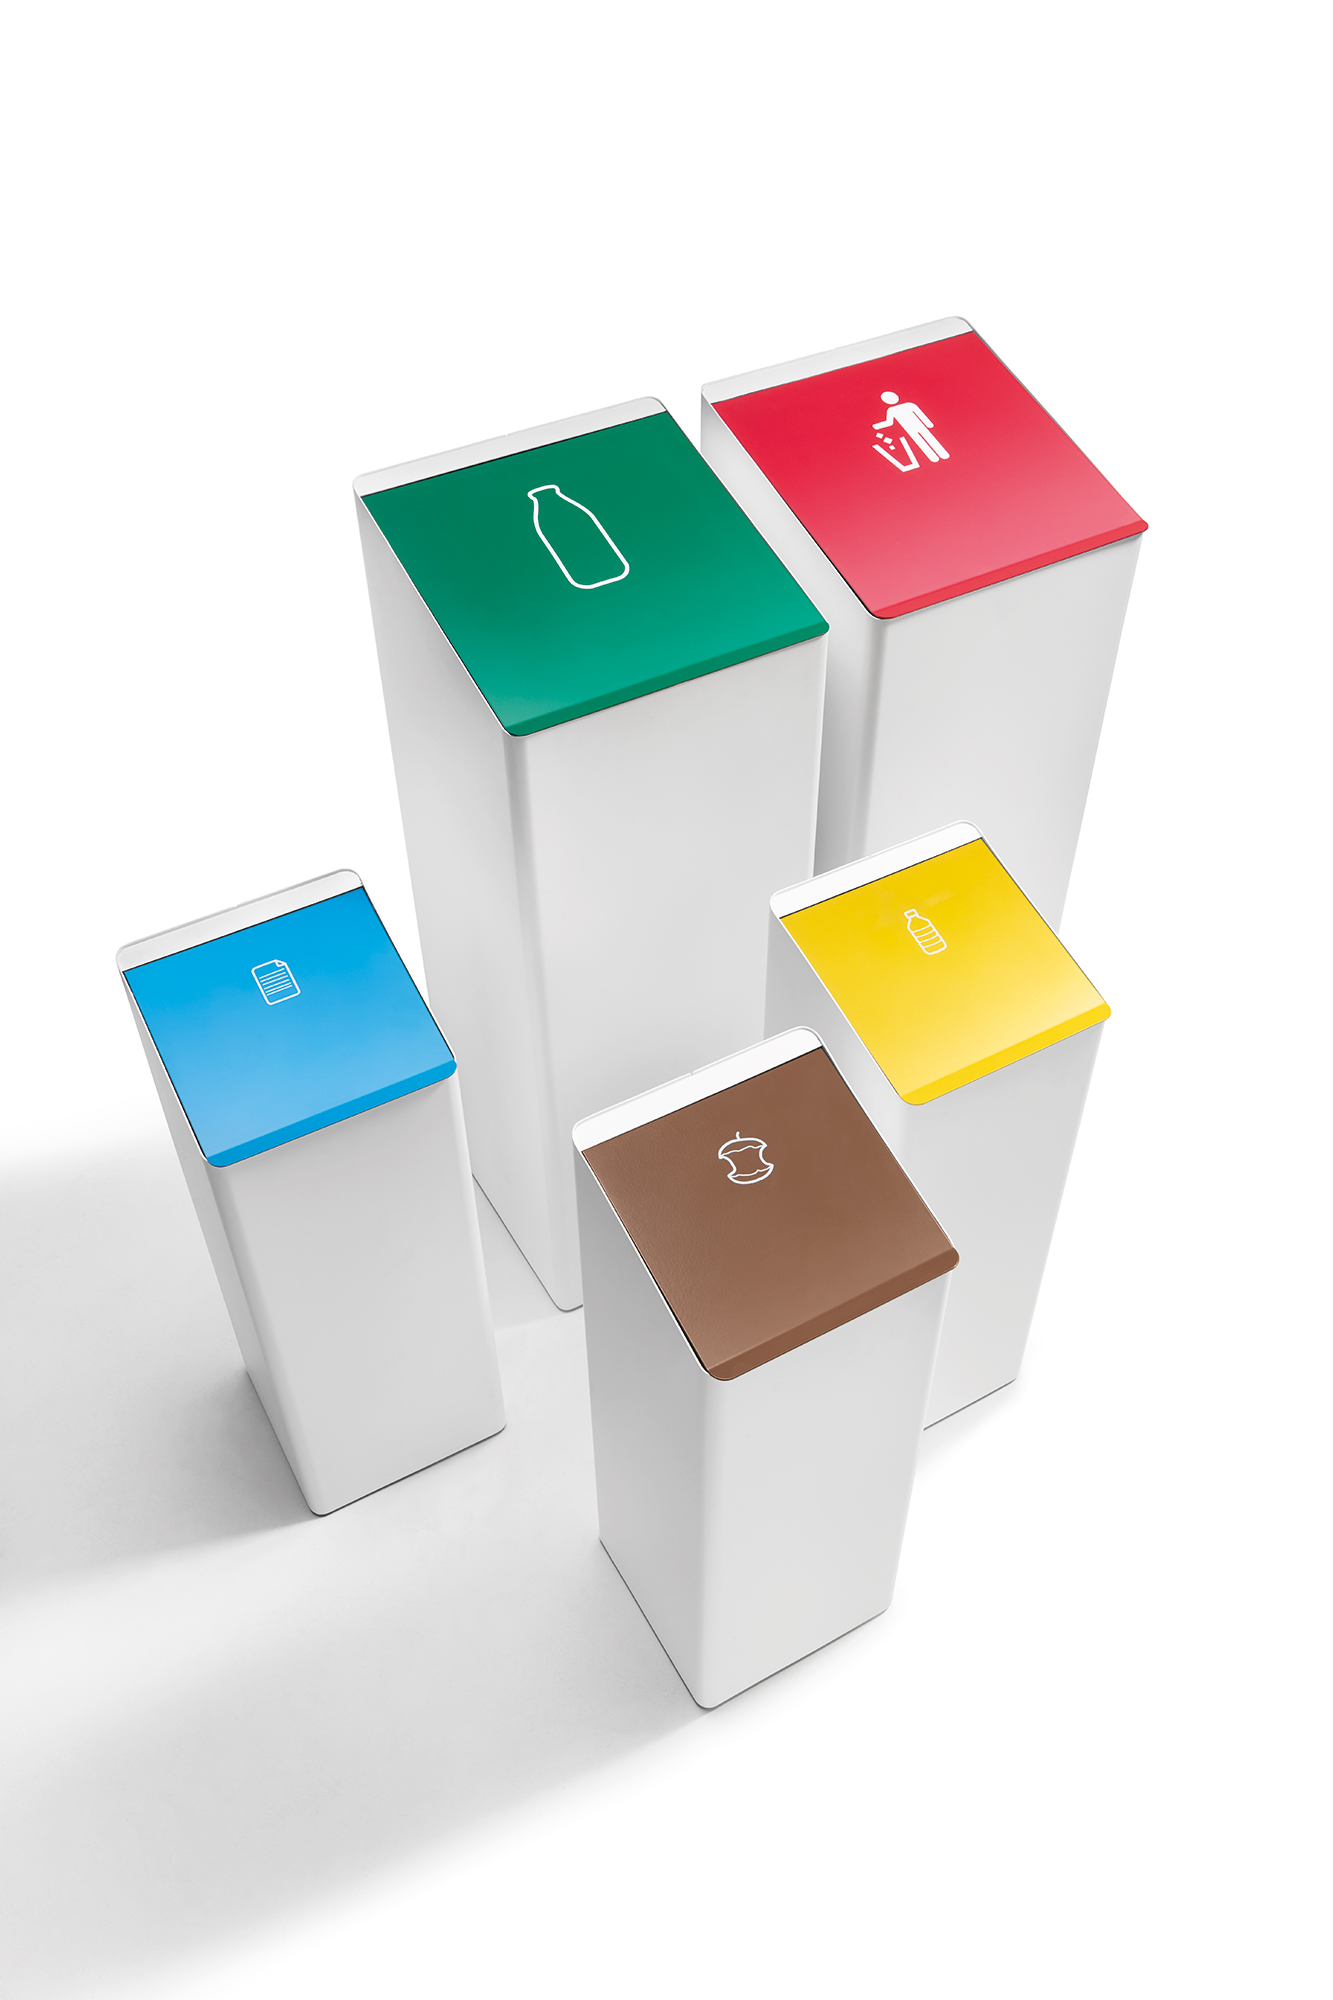 conteneur de recyclage coloré avec logo